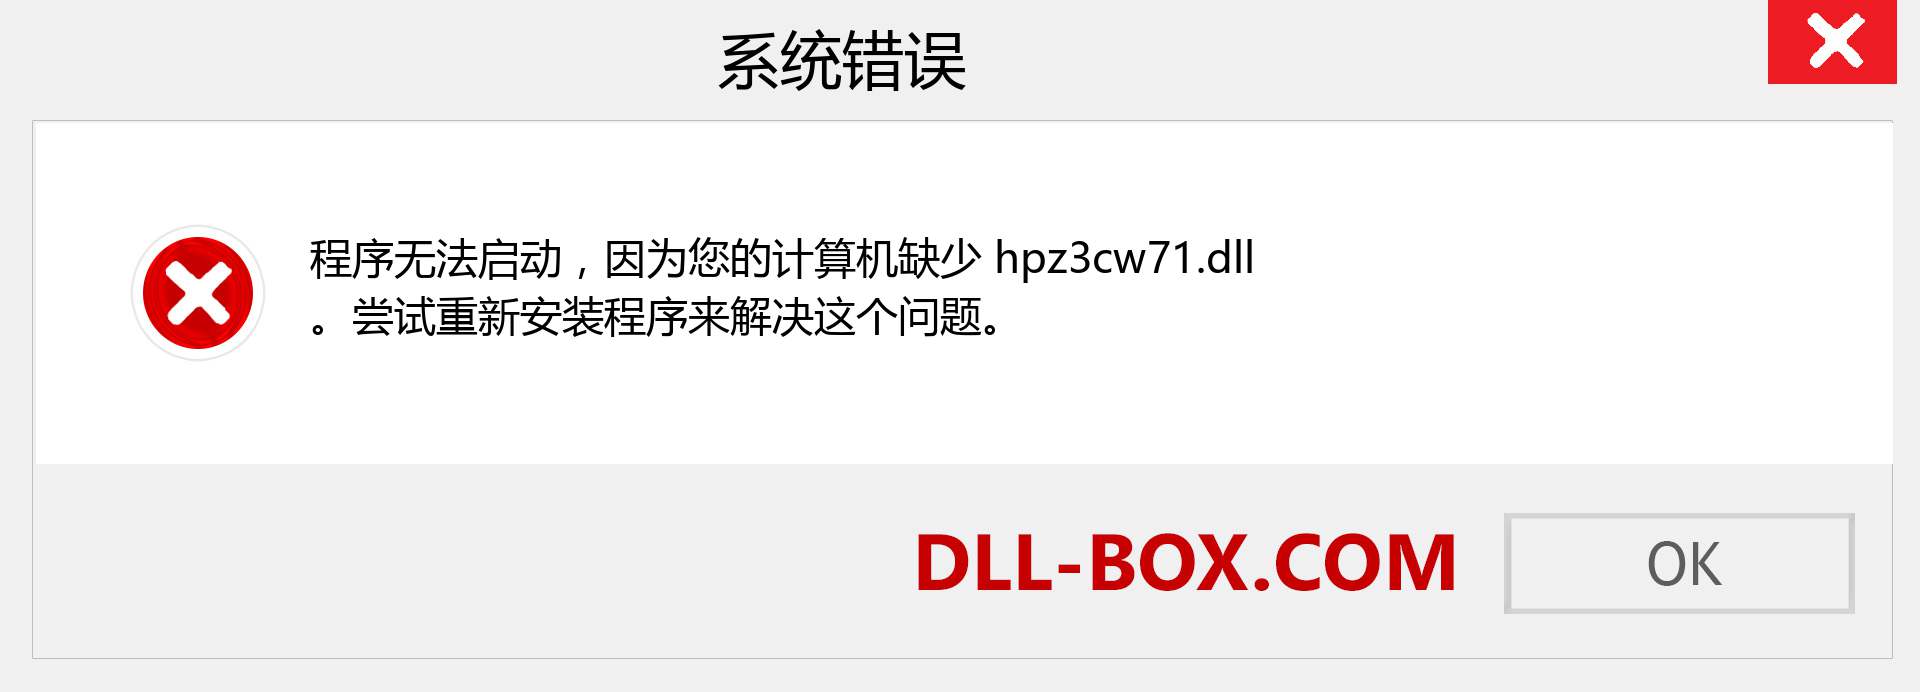 hpz3cw71.dll 文件丢失？。 适用于 Windows 7、8、10 的下载 - 修复 Windows、照片、图像上的 hpz3cw71 dll 丢失错误